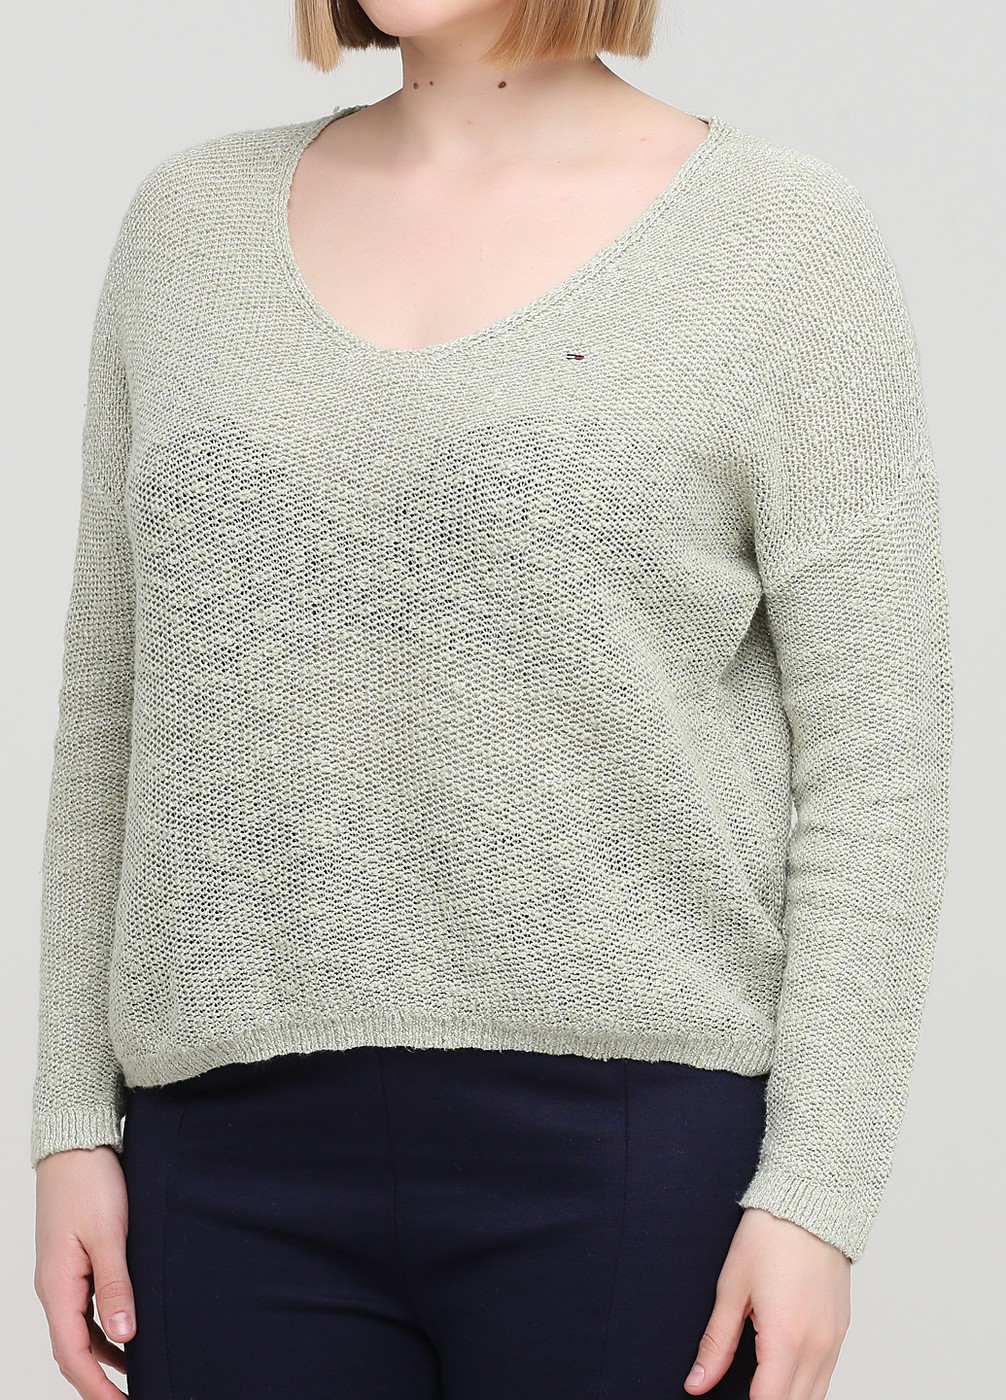 Пуловер женский - пуловер Tommy Hilfiger, L, L